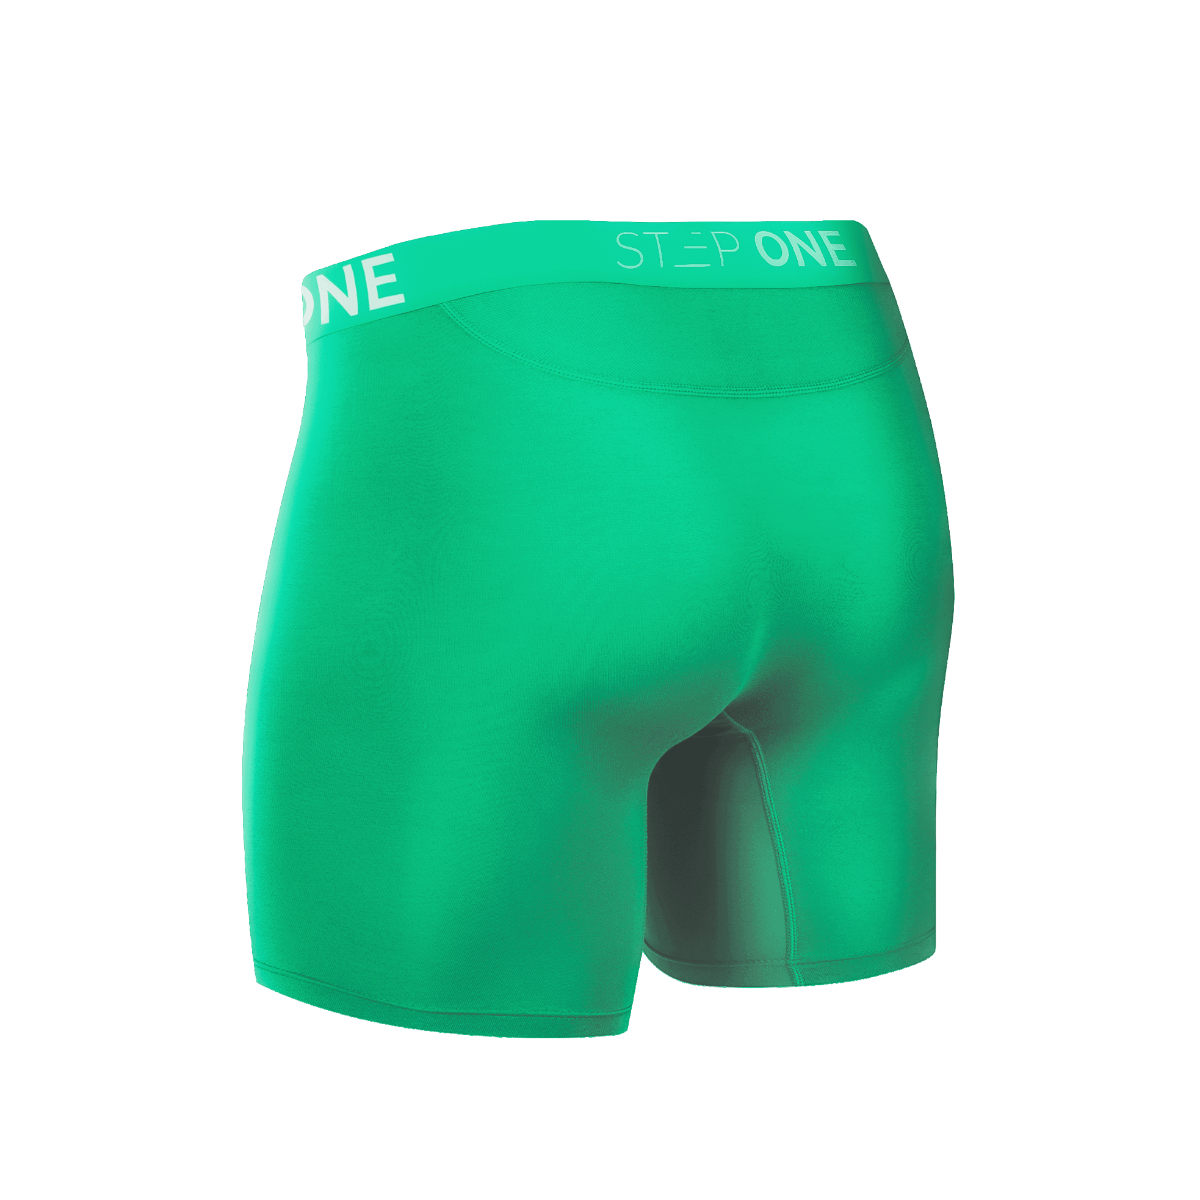 Boxer Brief - Edamame Balls | Step One Men's Underwear